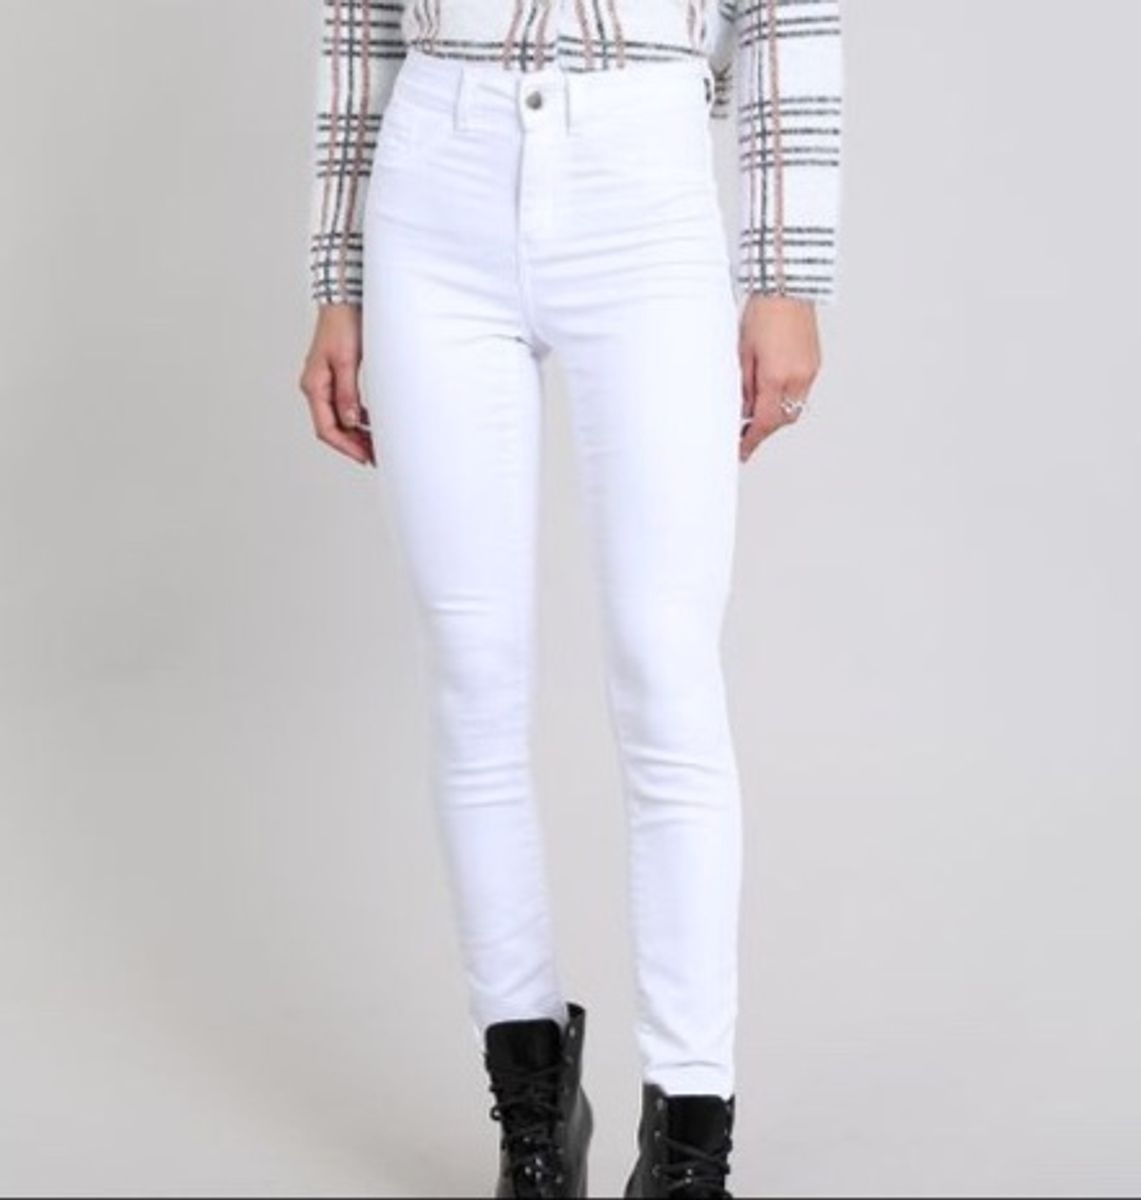 calça branca jeans feminina cintura alta